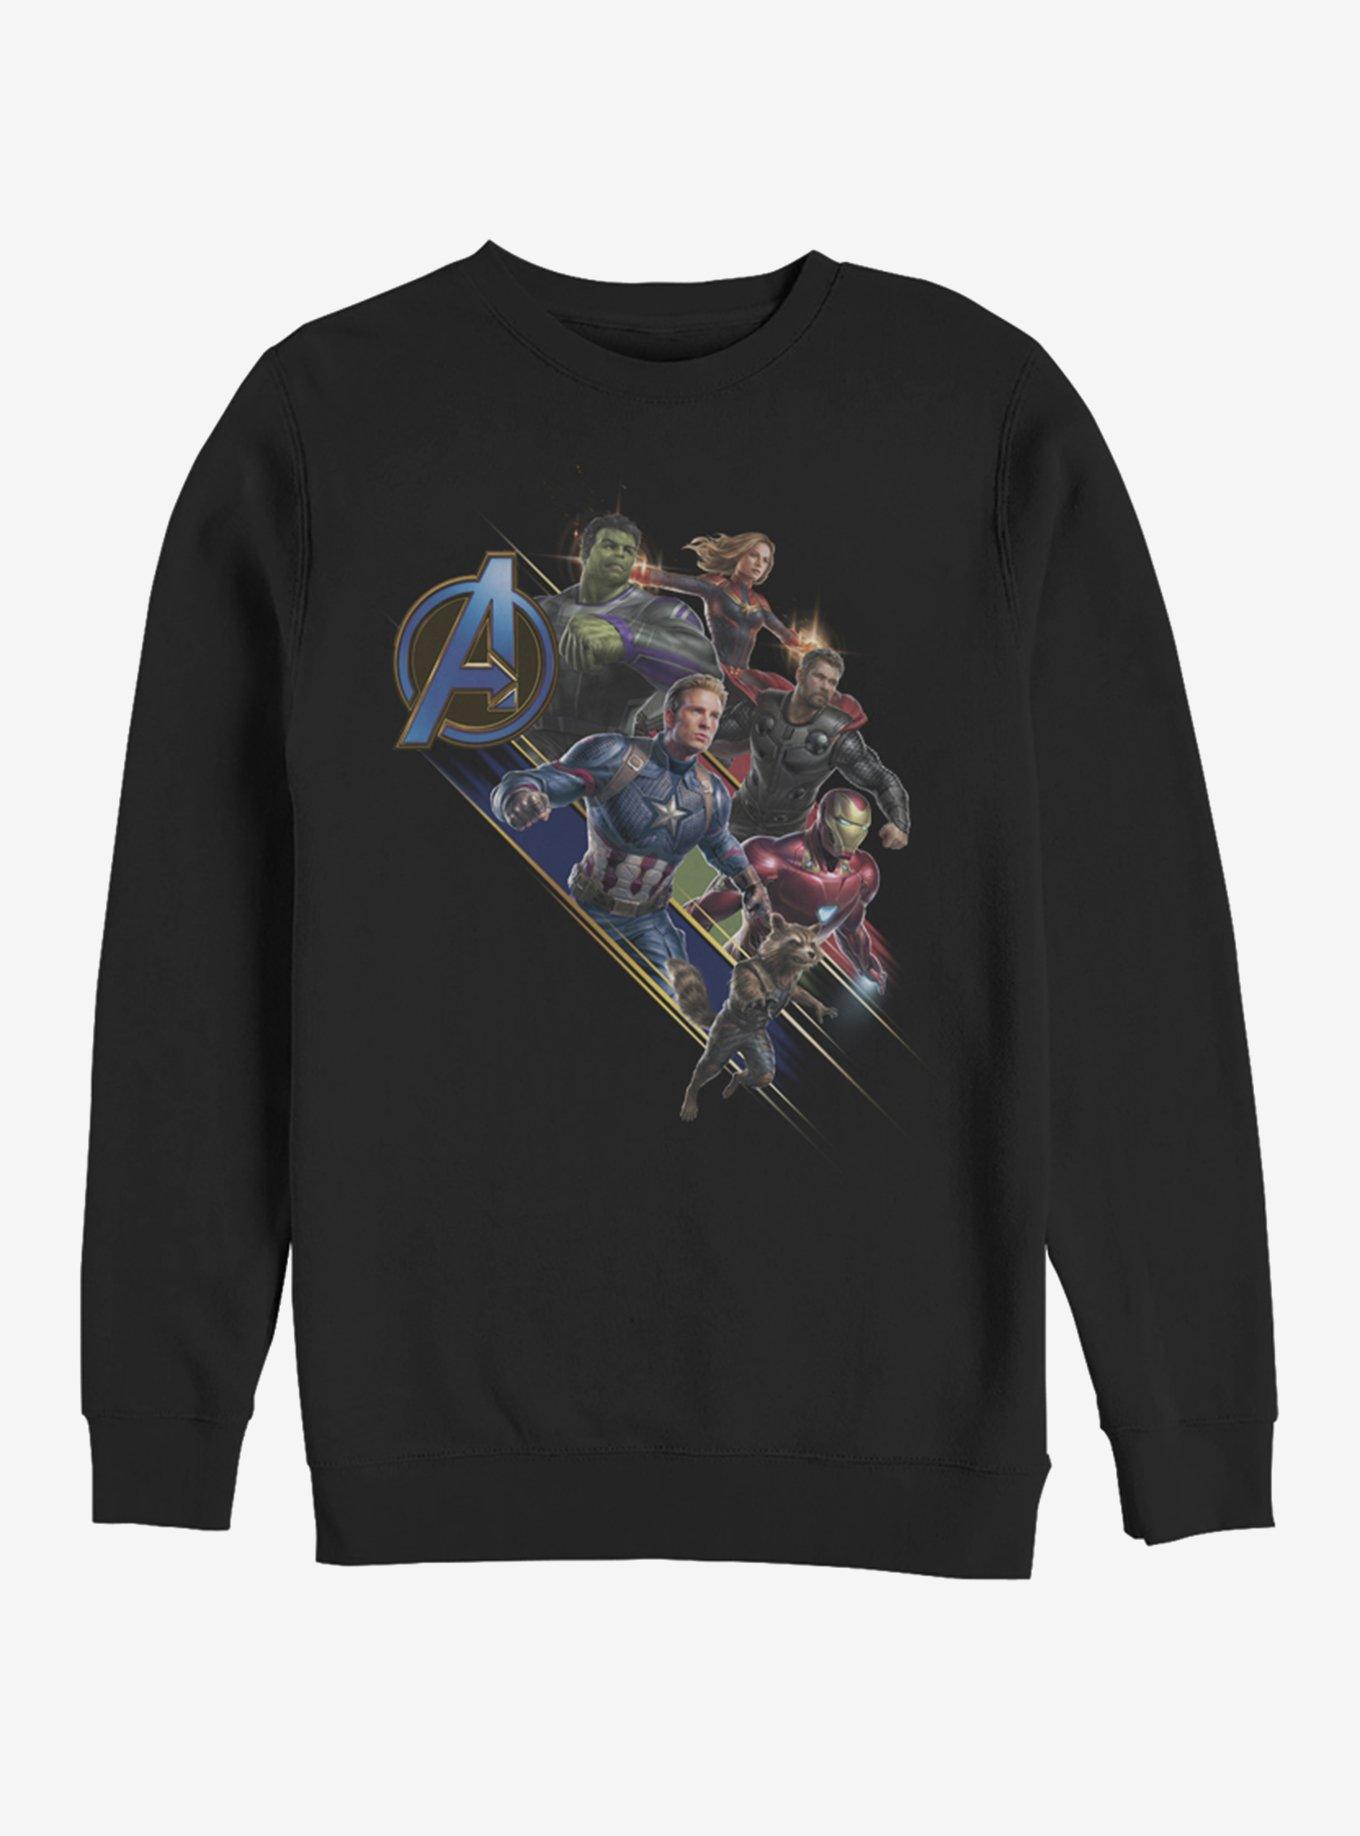 Marvel Avengers: Endgame Avengers Assemble Sweatshirt